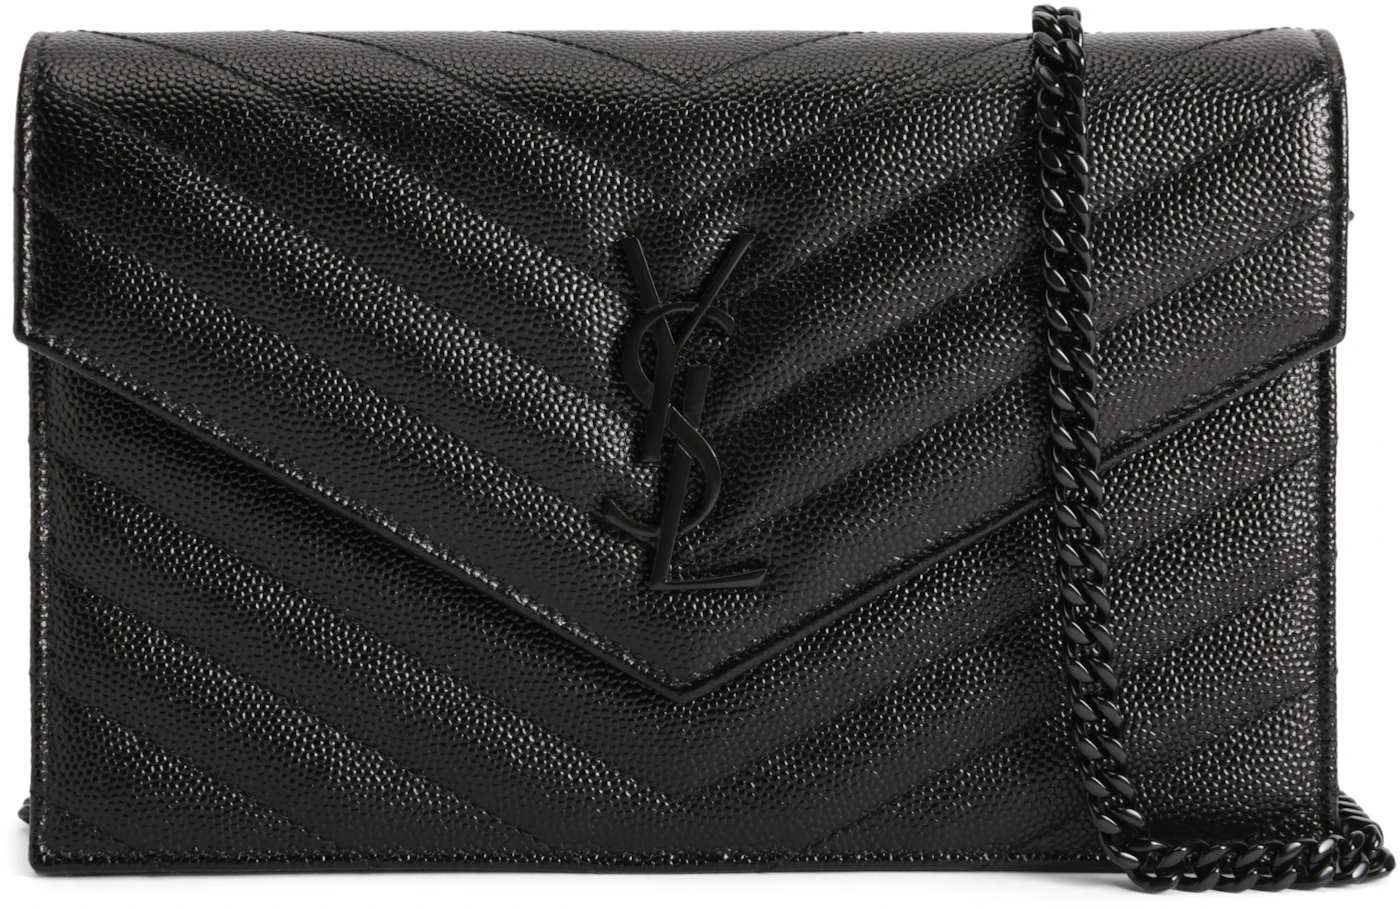 Saint Laurent Envelope Chain Wallet In Grain De Poudre Embossed Leather